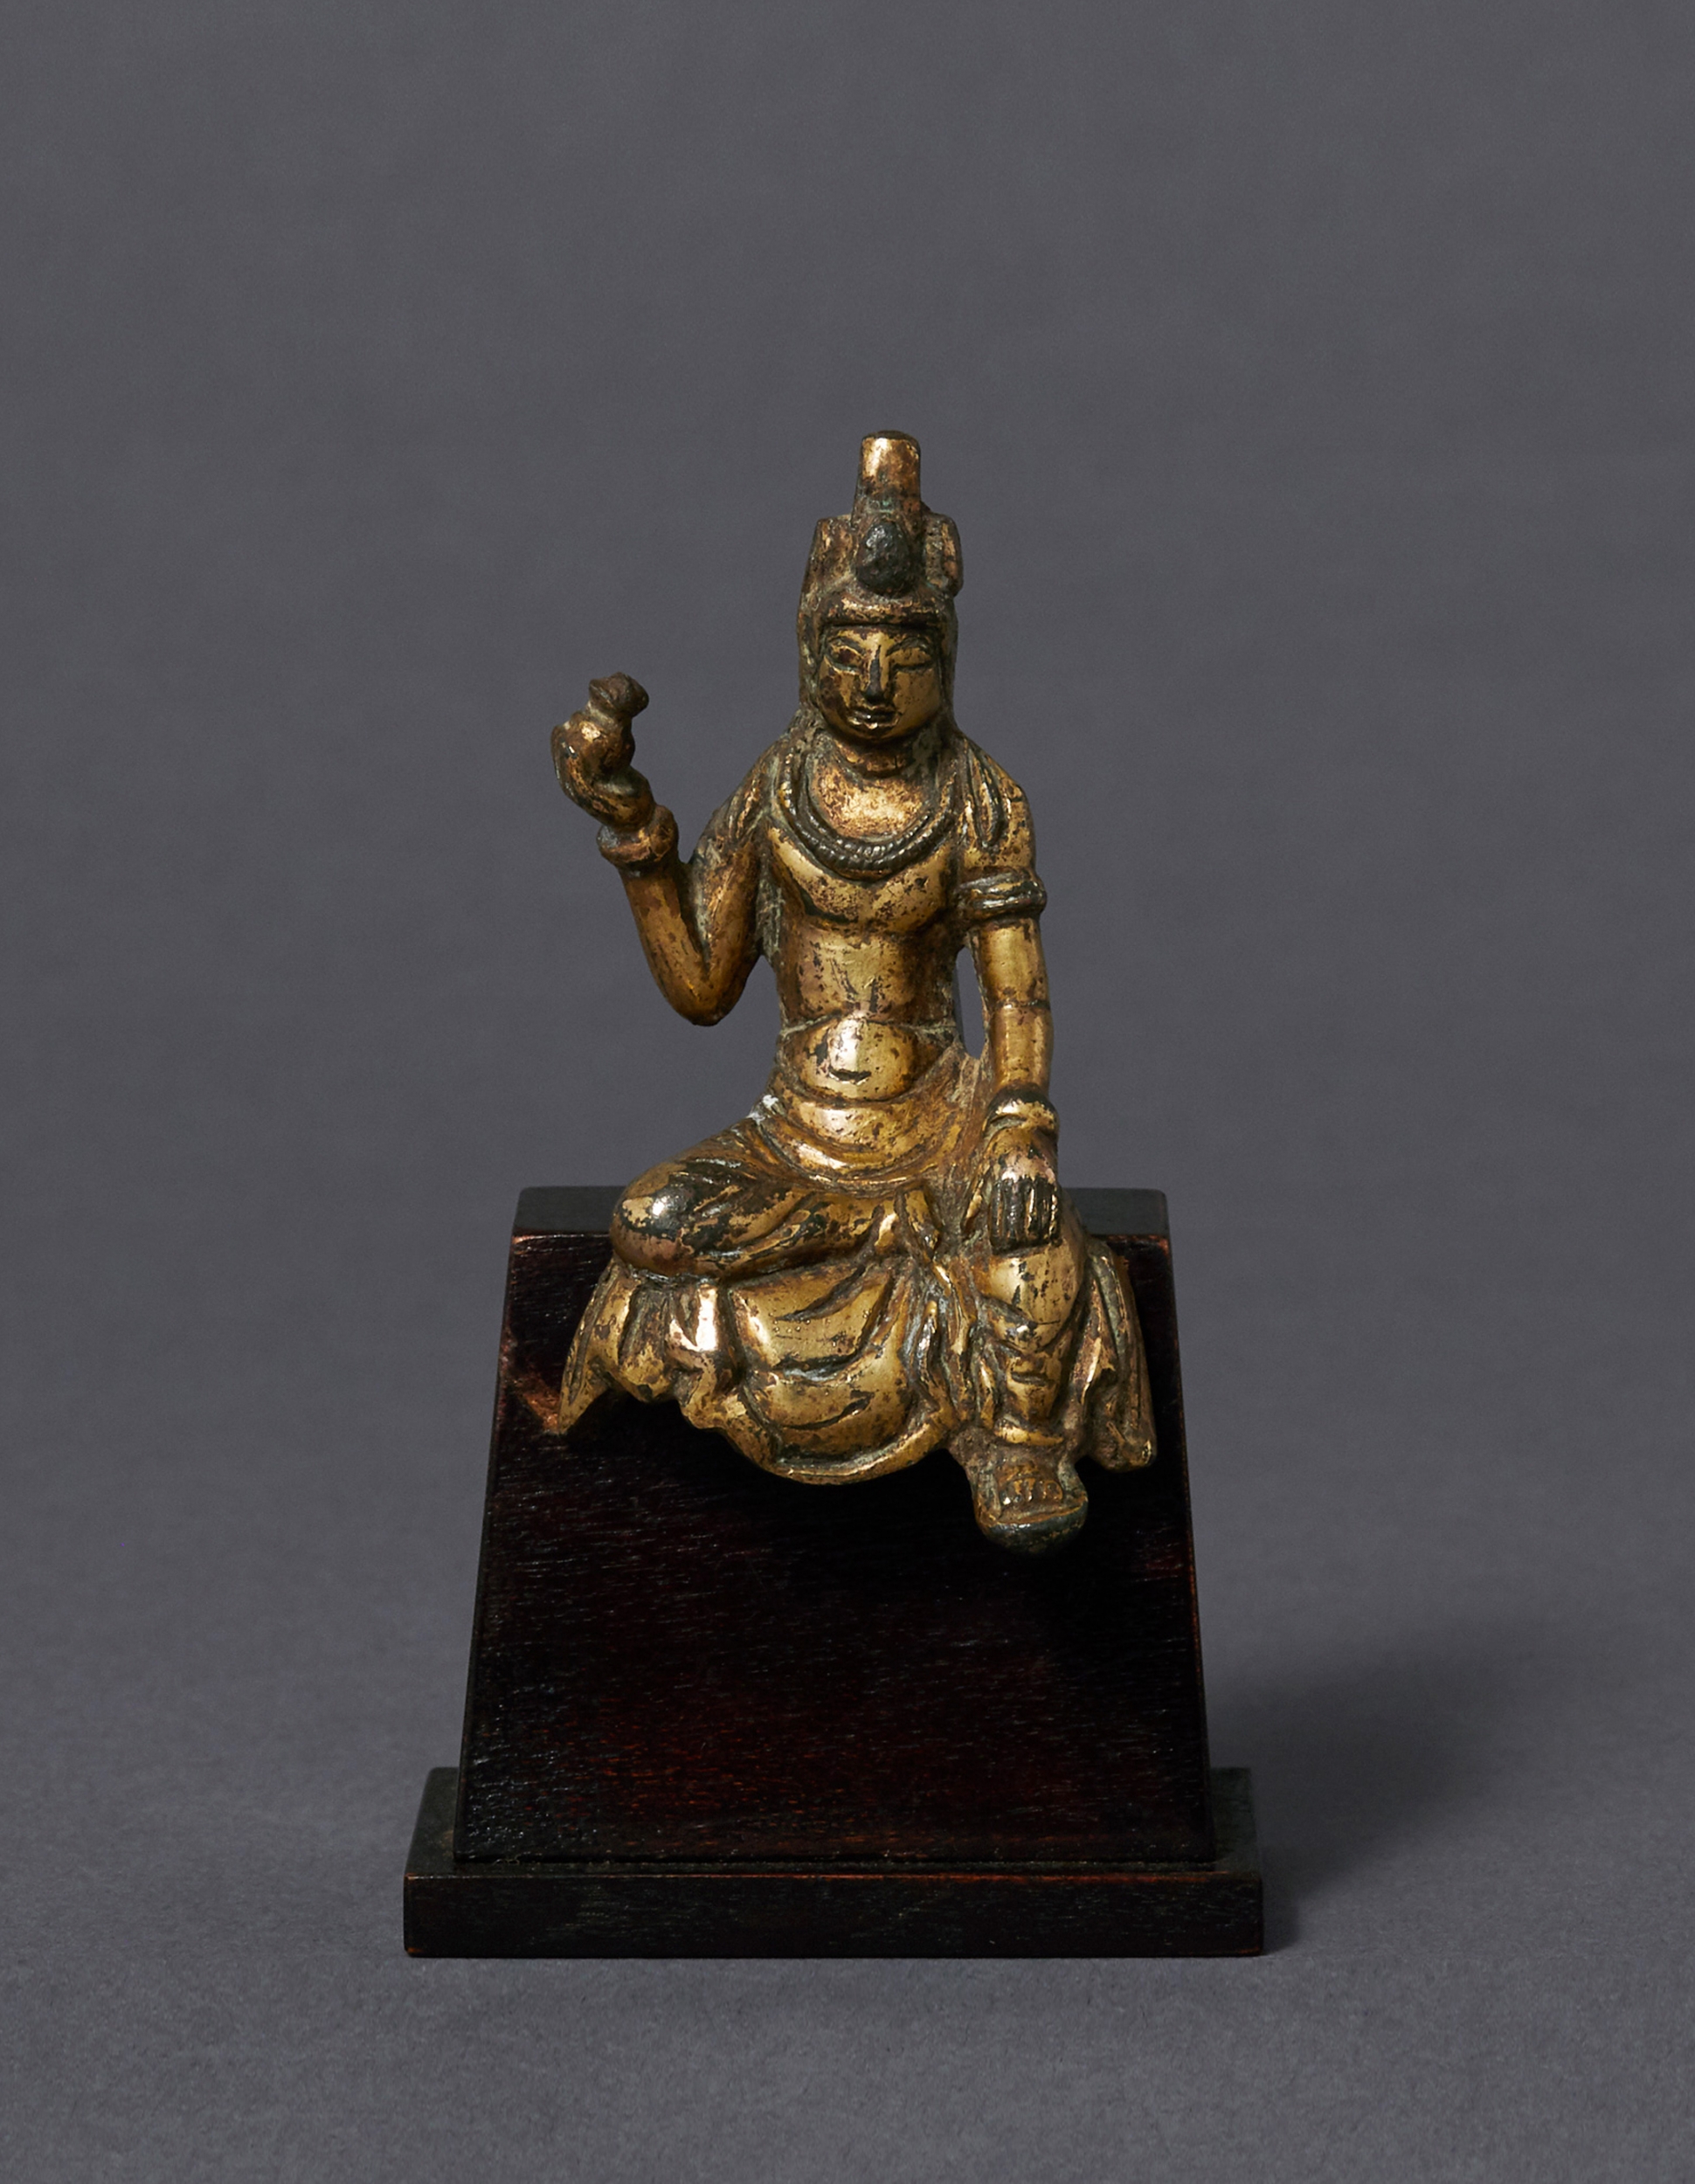 明星観音菩薩像 約10.4kg 銅仏 仏像 銅器 古美術品 仏教美術